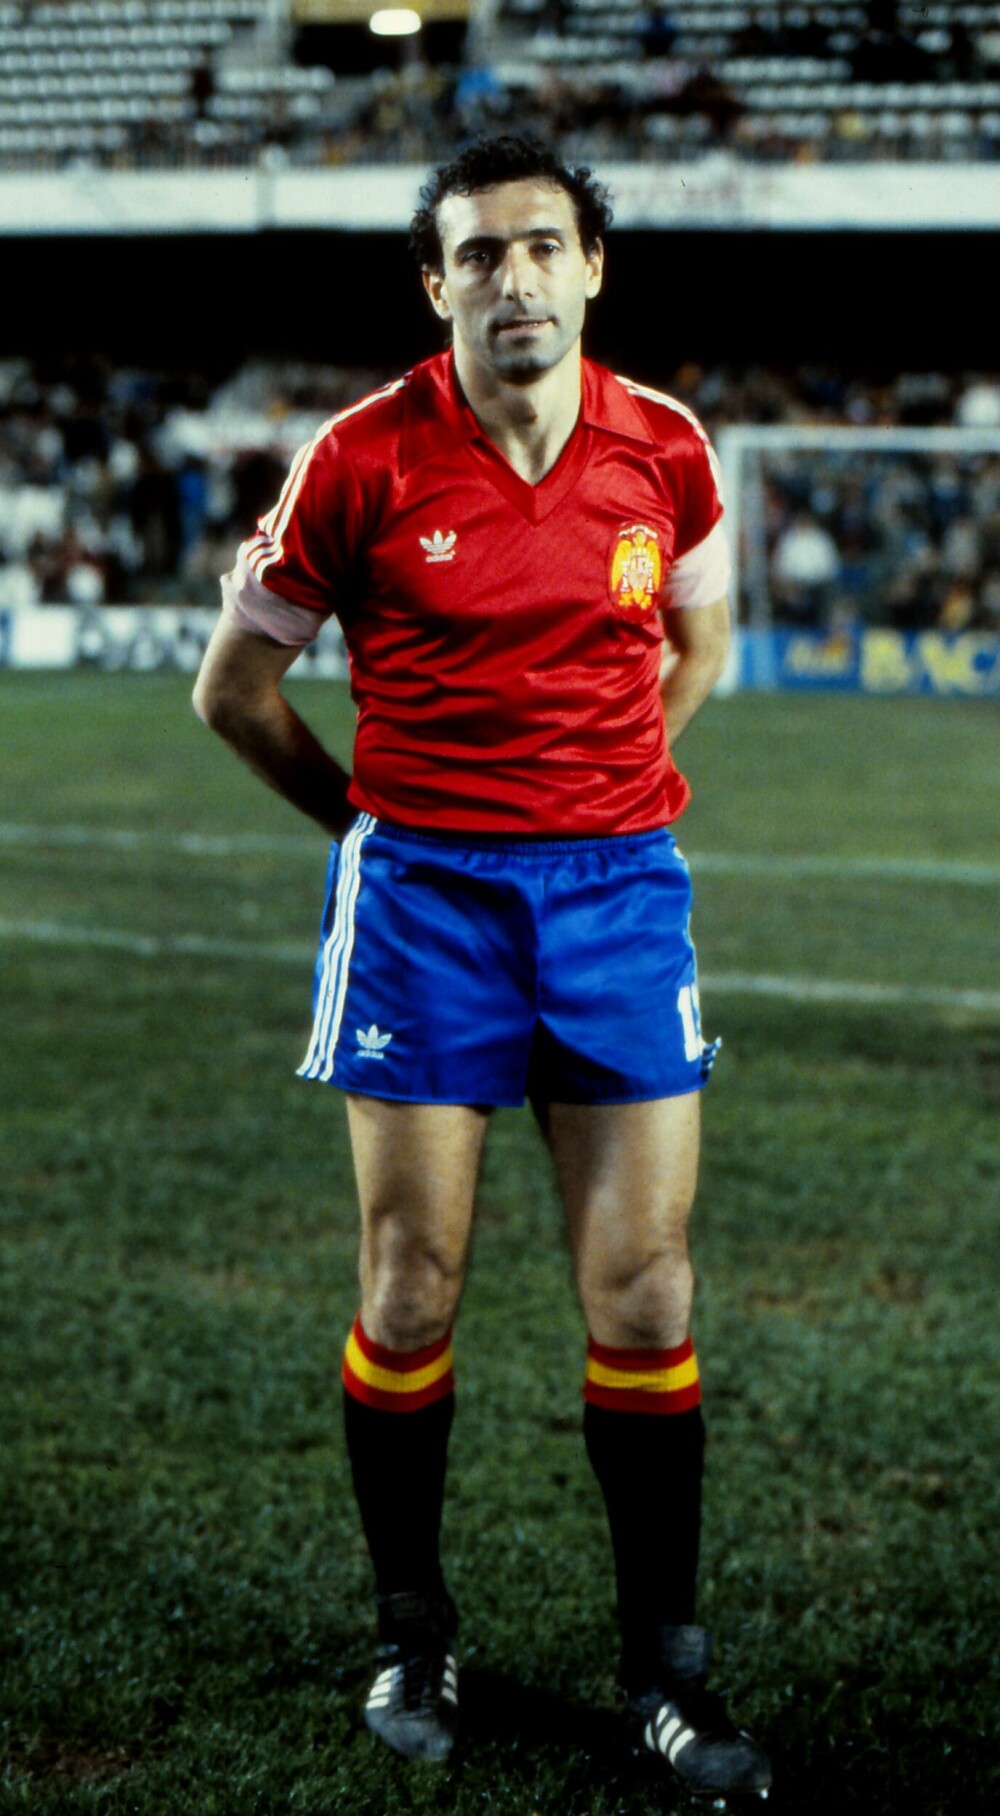 <b>MÅLKONGENS DRAMA:</b> Enrique Quini Castro var kidnappet i tre uker våren 1981, men ble likevel toppscorer i ligaen den sesongen. Her er han i landslagsdrakt året etter. Quini spilte 35 landskamper for Spania og scoret åtte mål. 